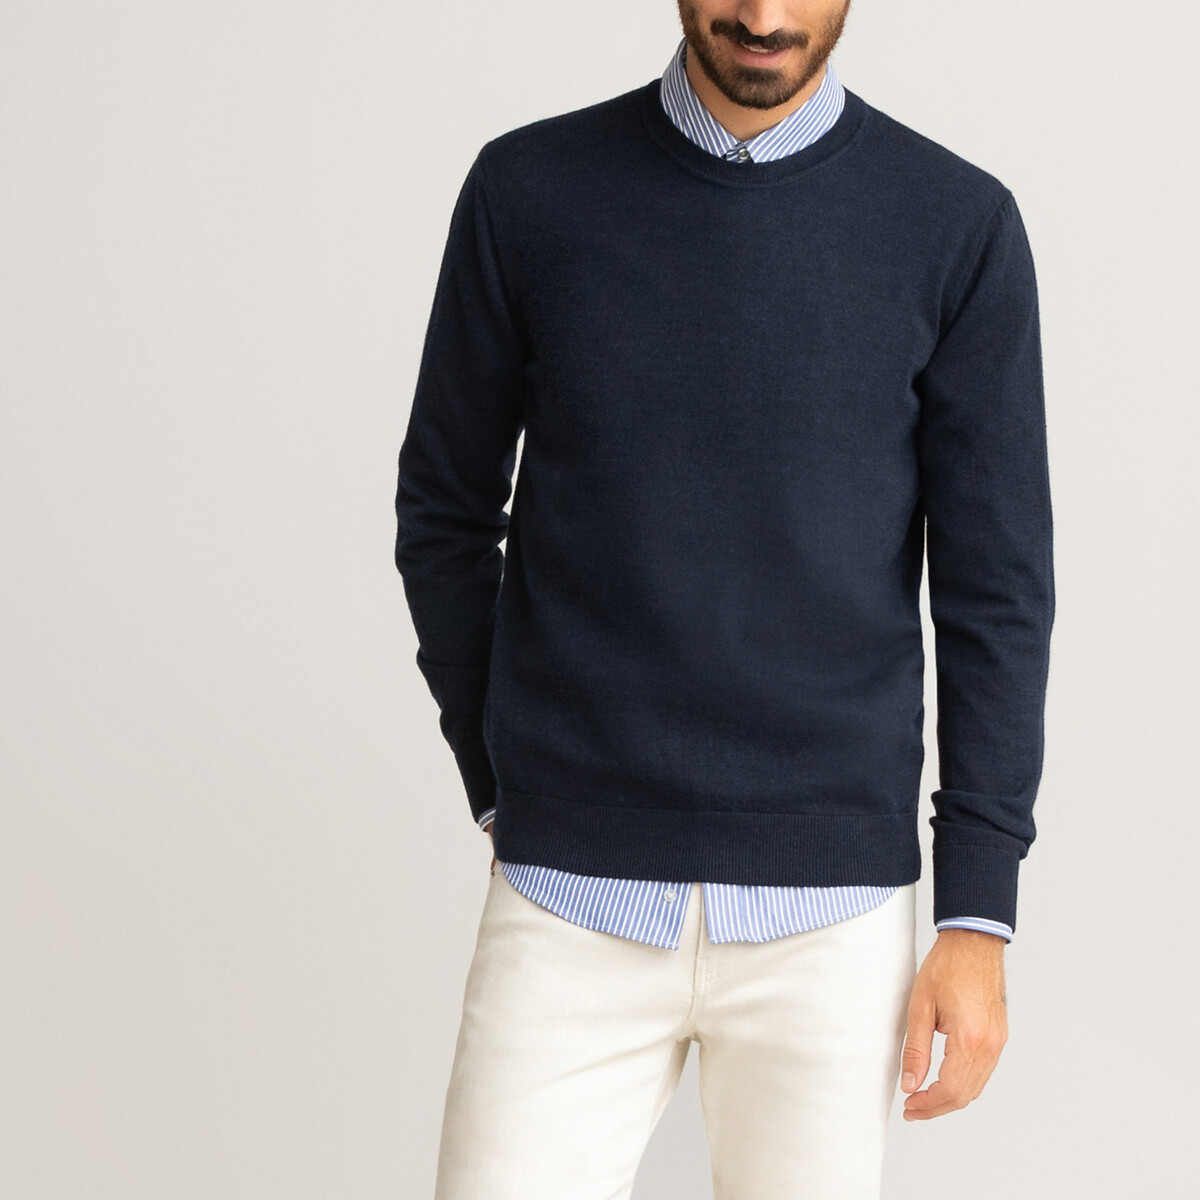 Пуловер С круглым вырезом из 100 шерсти мериноса S синий